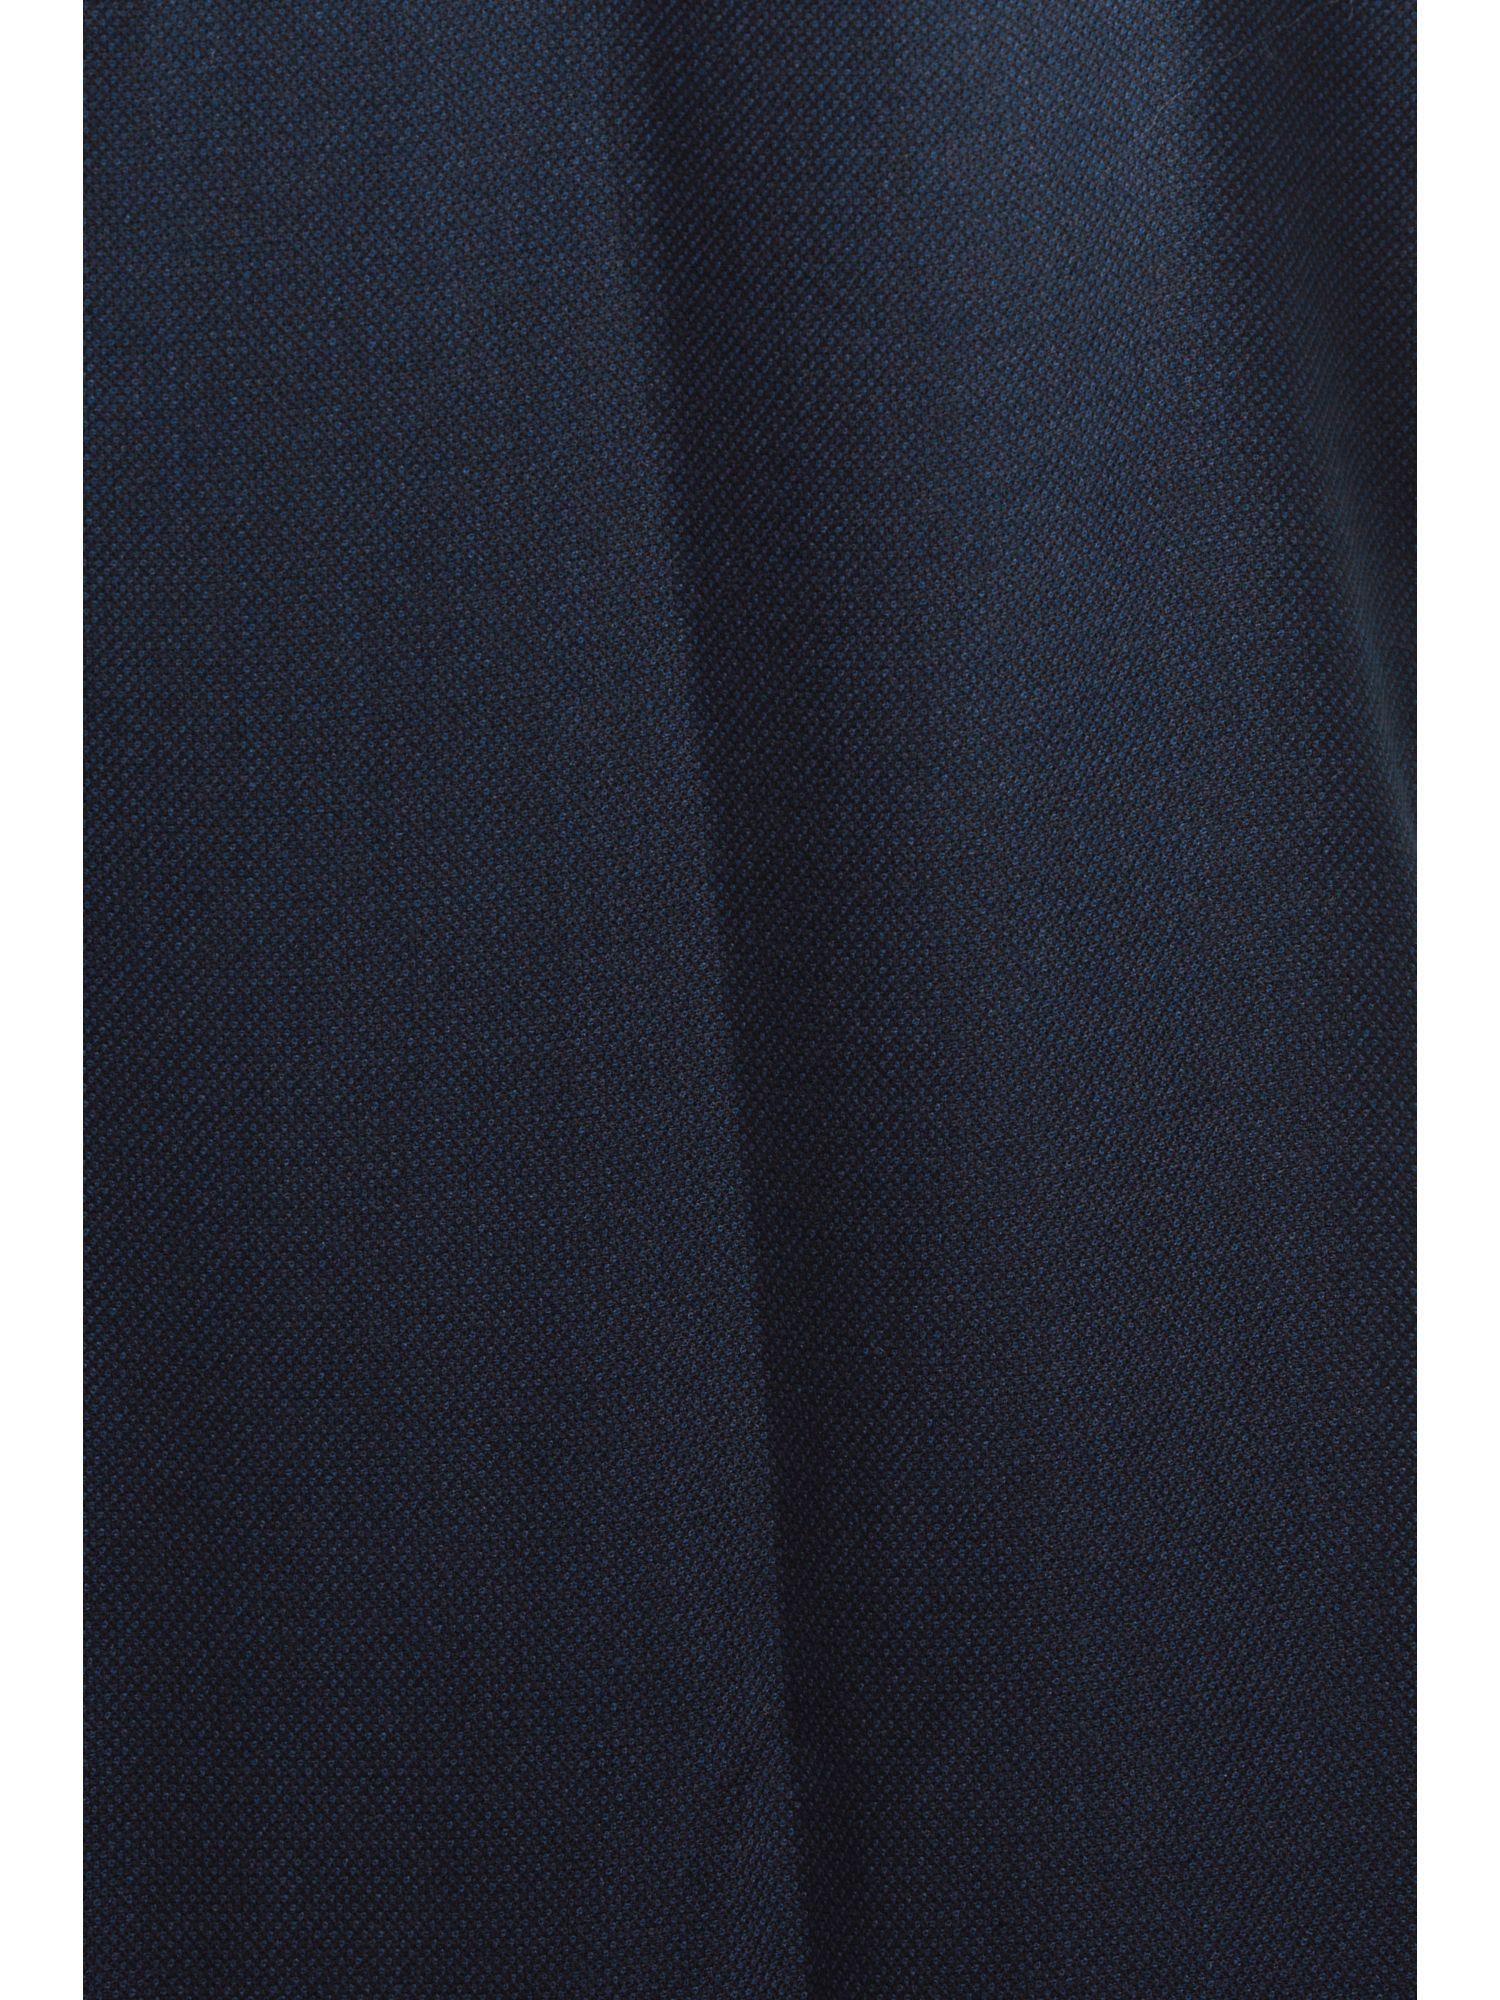 Esprit Collection Anzughose Mix Match: Birdseye-Muster & NAVY Anzughose mit